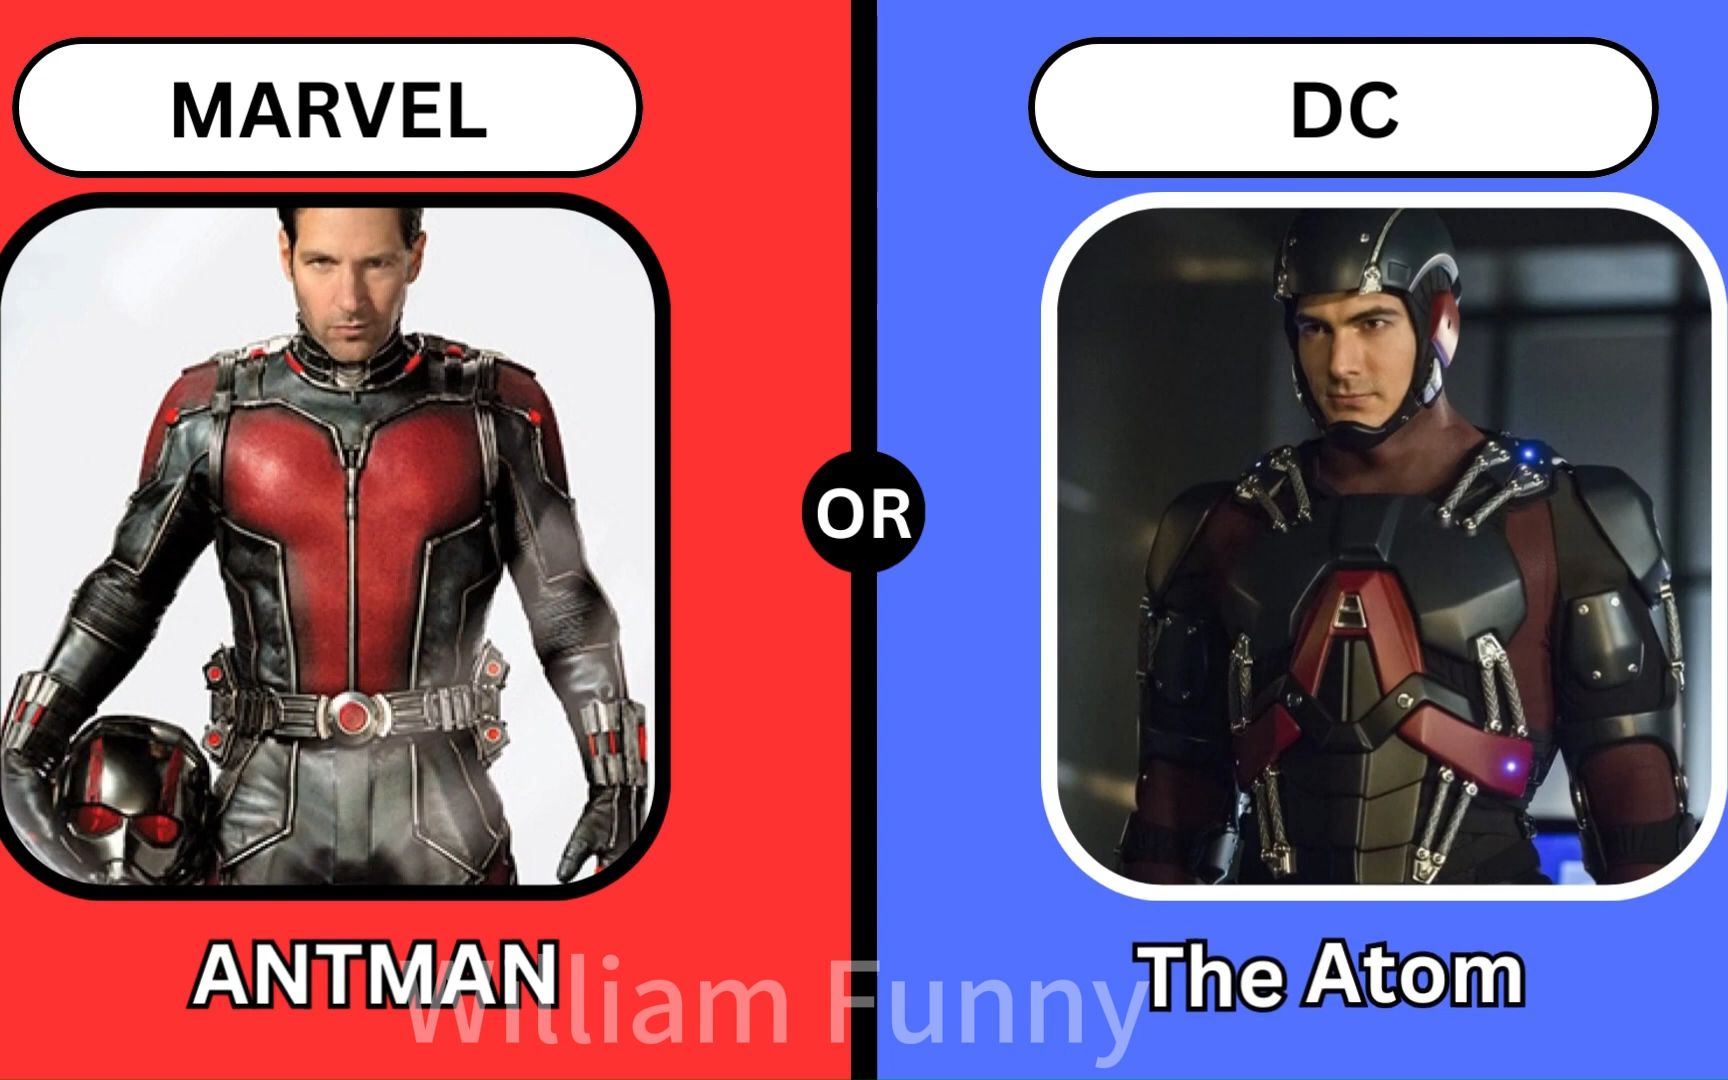 漫威英雄和DC英雄比较，你更喜欢哪个？第1集